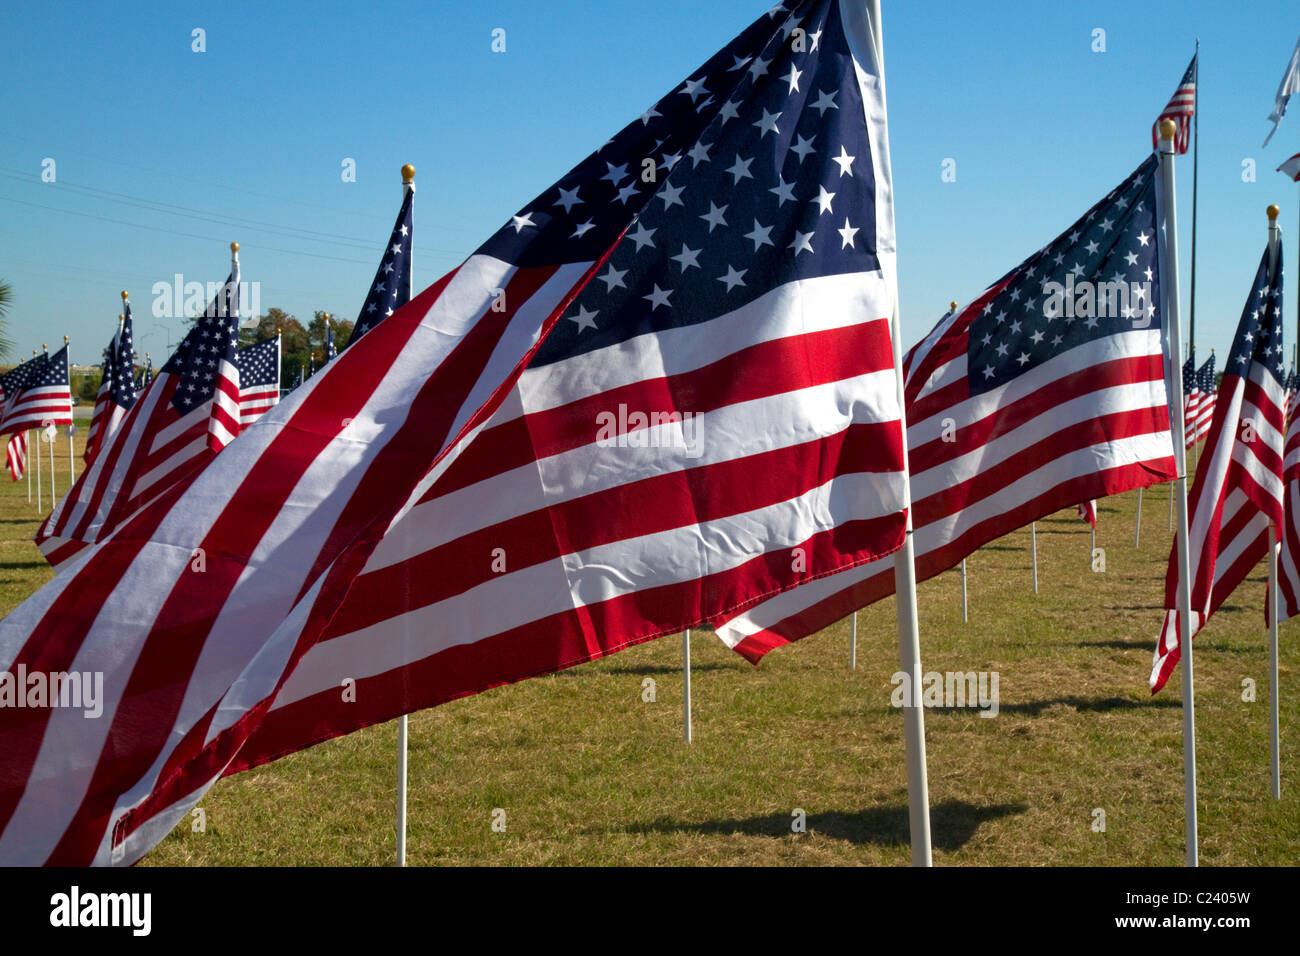 Banderas de los Estados Unidos en la exhibición en honor de los Veteranos del Dat en Battleship Memorial Park, de Mobile, Alabama, Estados Unidos. Foto de stock